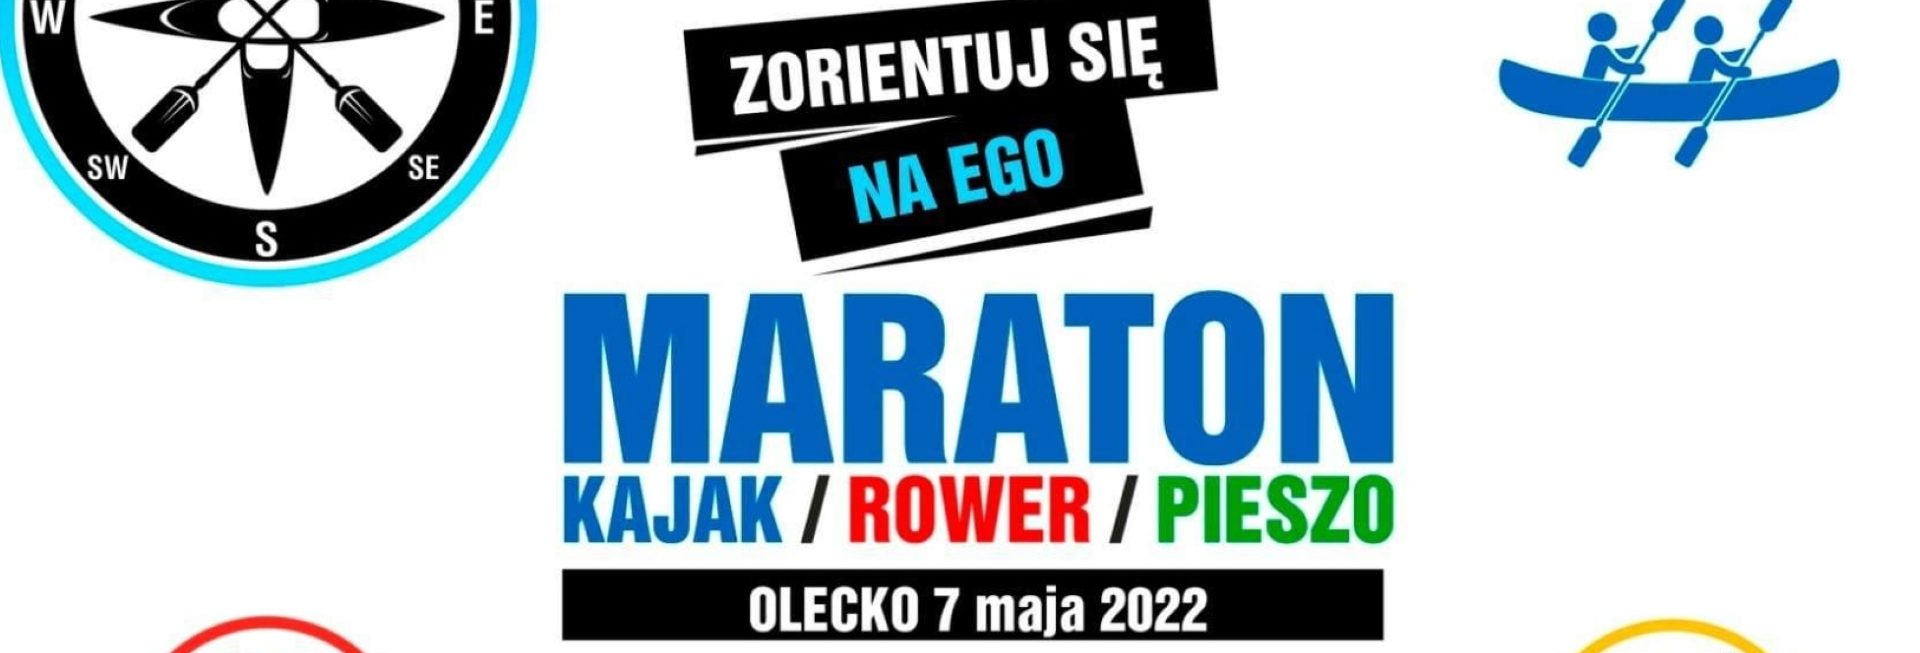 Plakat graficzny zapraszający do Olecka na I ETAP Maratonu na orientację kajak/rower/pieszo - "Zorientuj się na EGO" Olecko 2022.